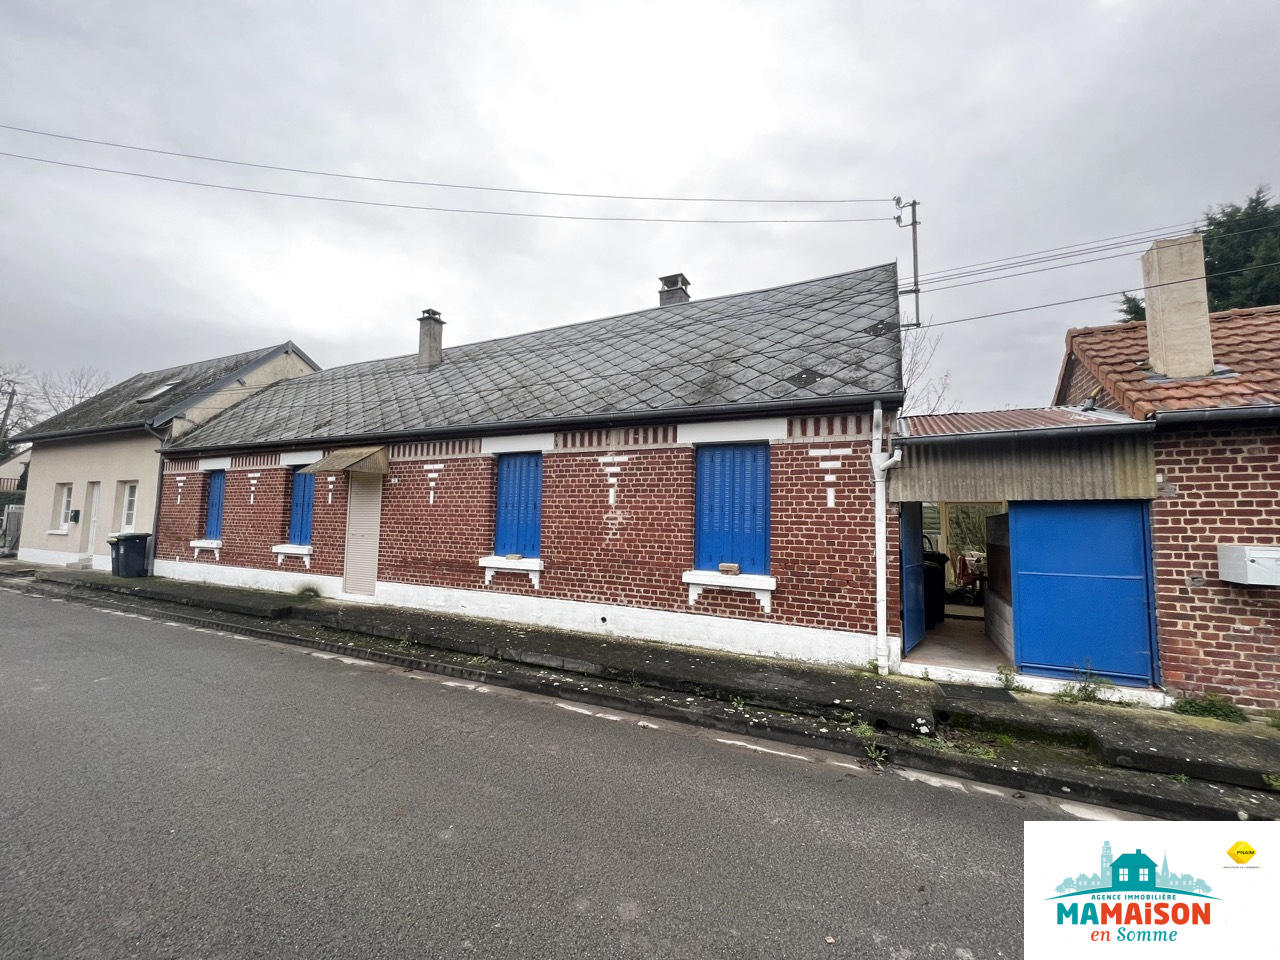 Immo80 – L'immobilier à Amiens et dans la Somme-Exclusivité, à Bonnay (80800), vente d’un ensemble immobilier composé de 2 logements dont un en location.